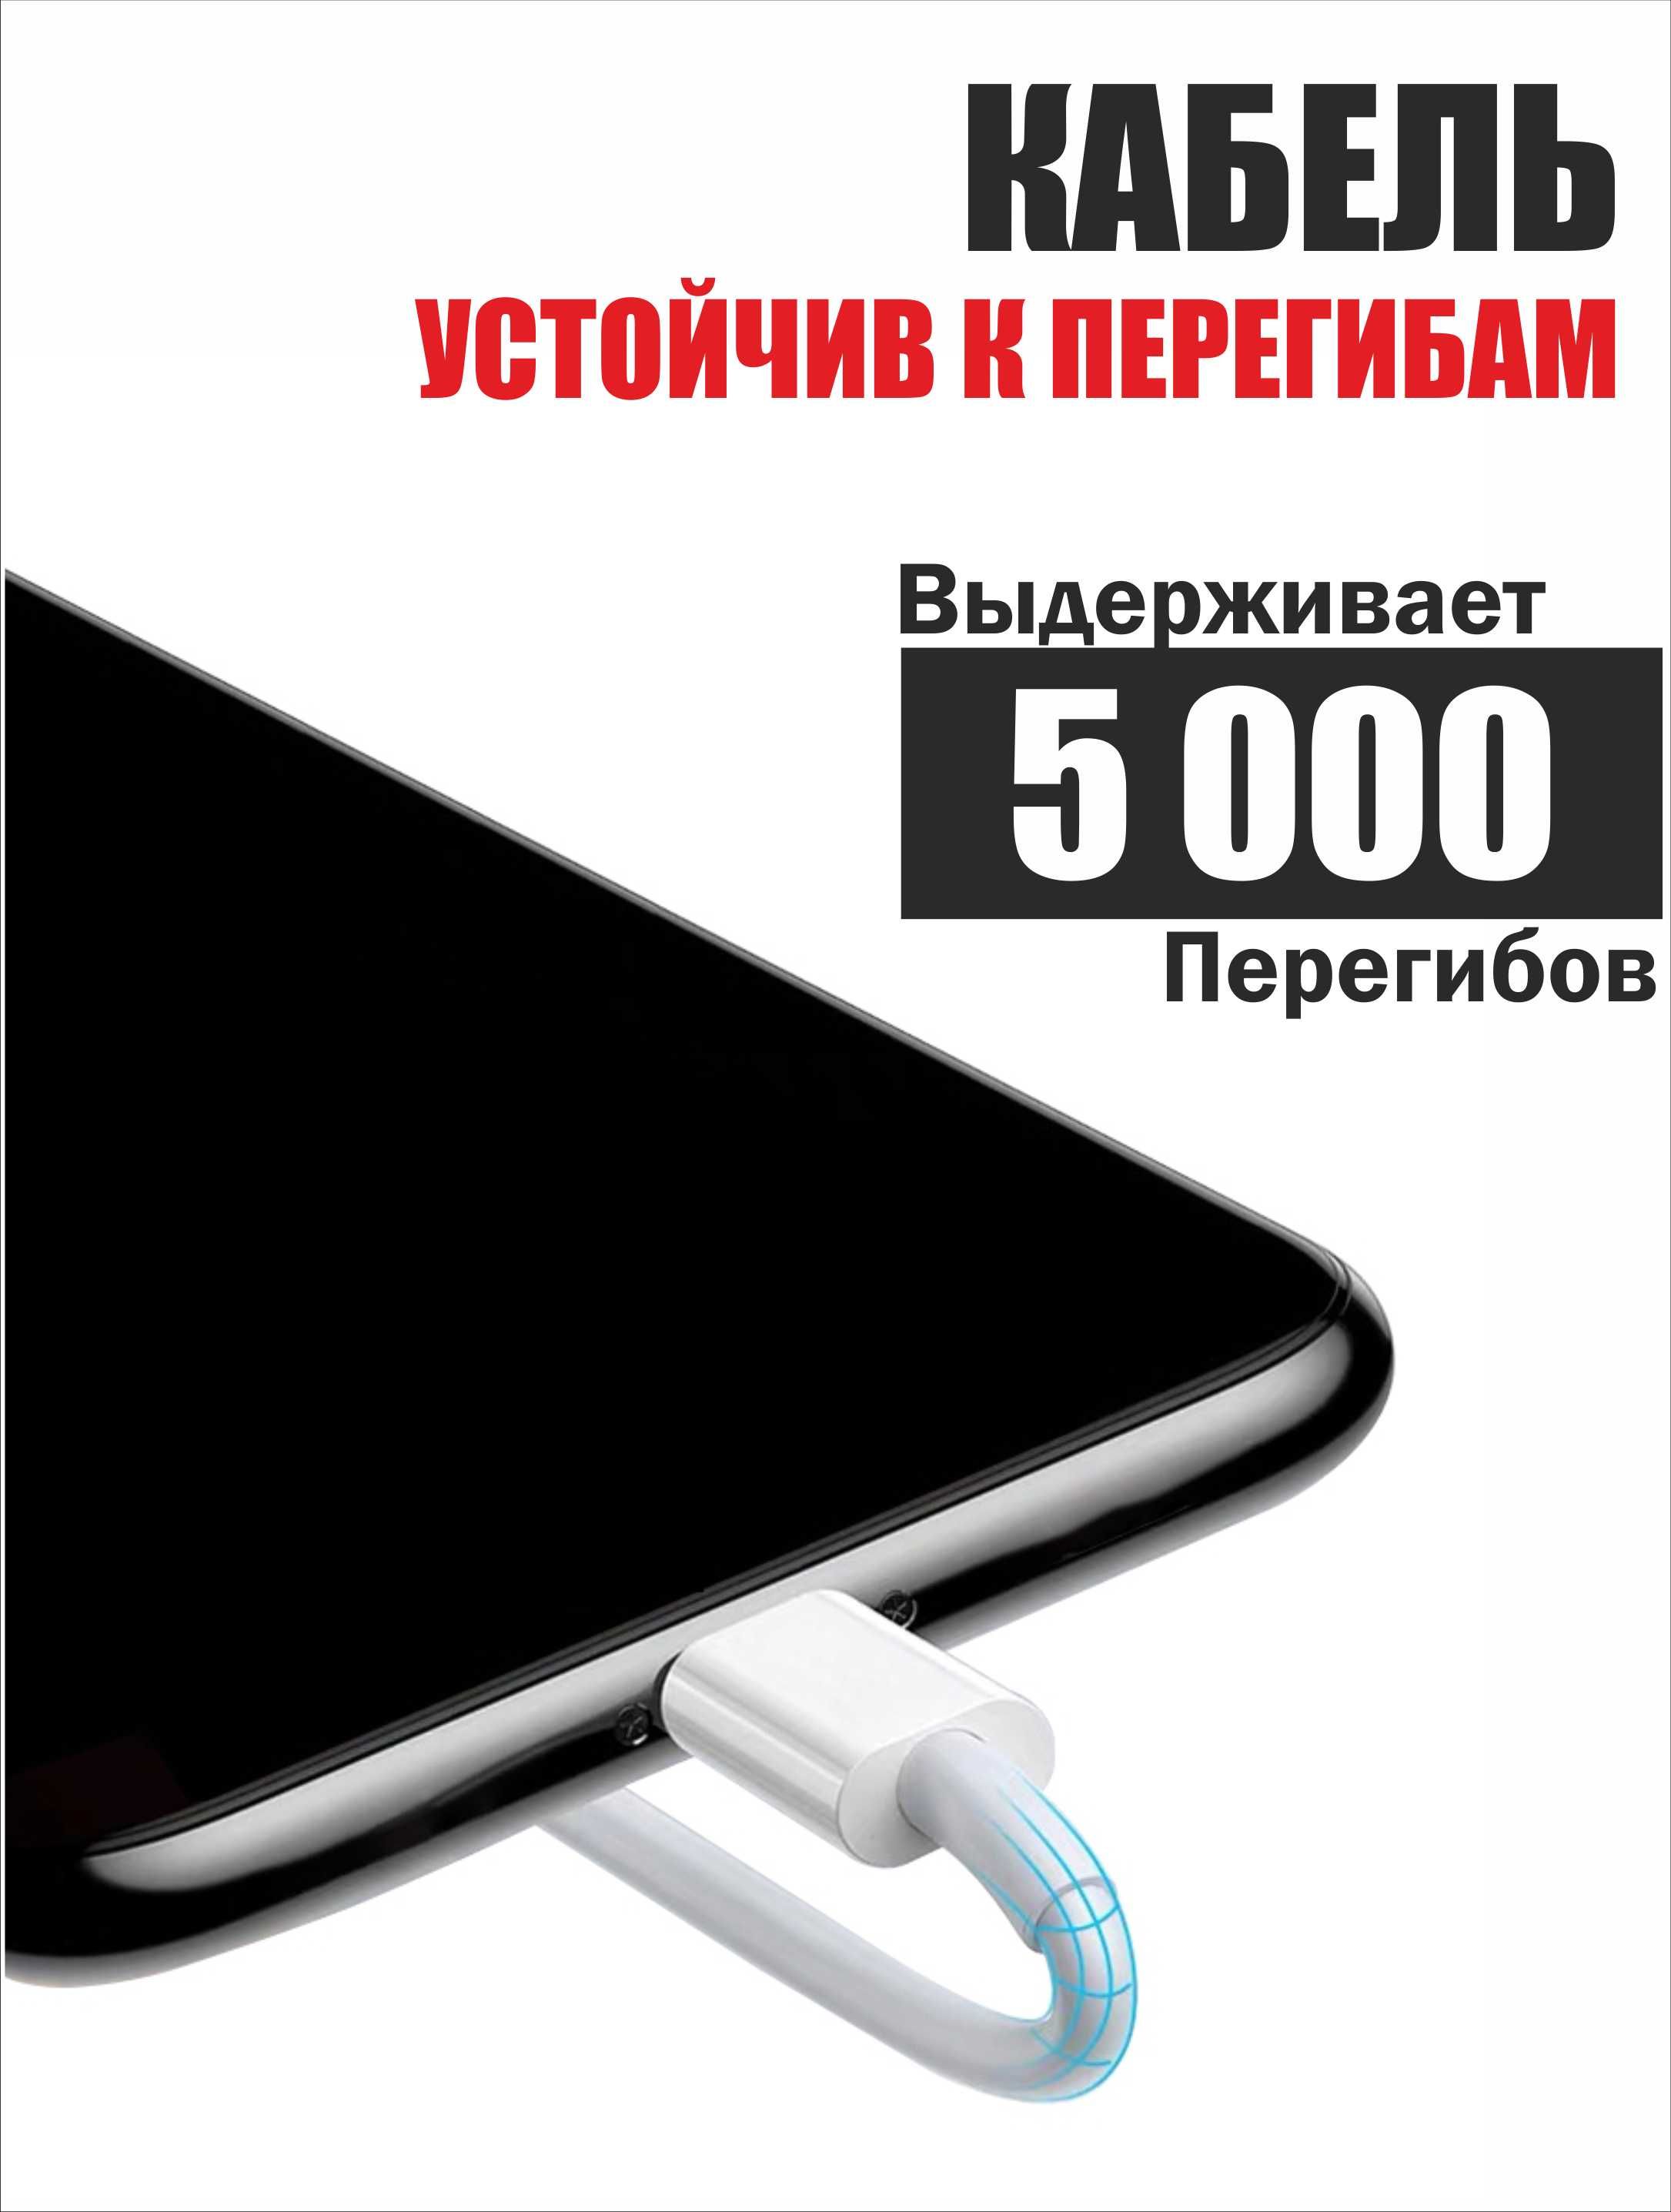 Кабель iPhone для быстрой зарядки телефона, планшета, 1 метр